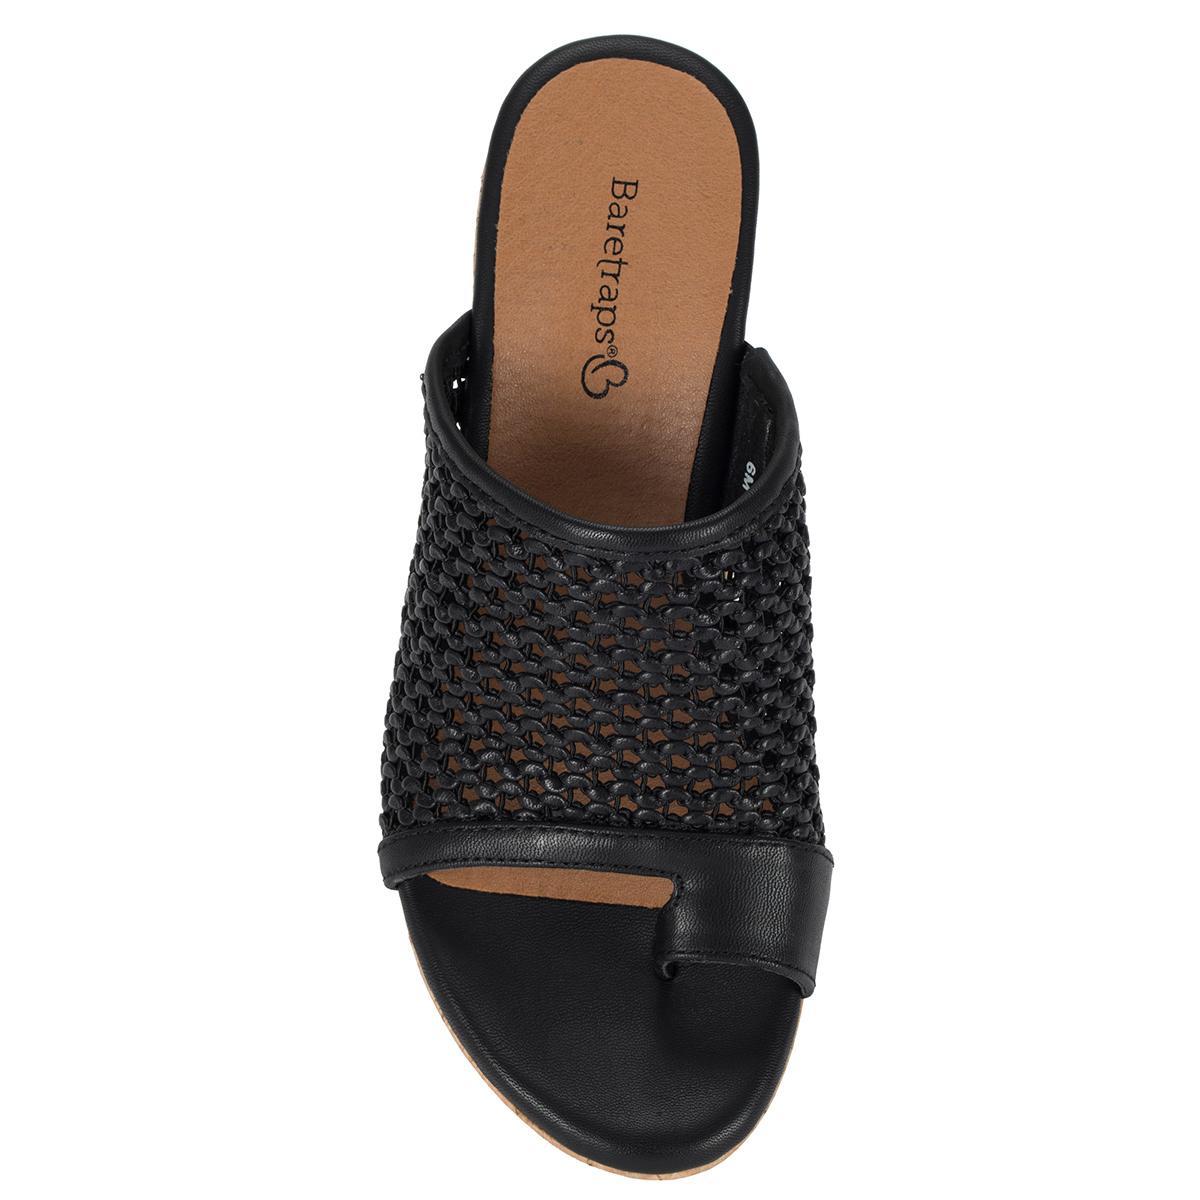 Baretraps Women's Bethie Wedge Sandals, 7.5M Product Image